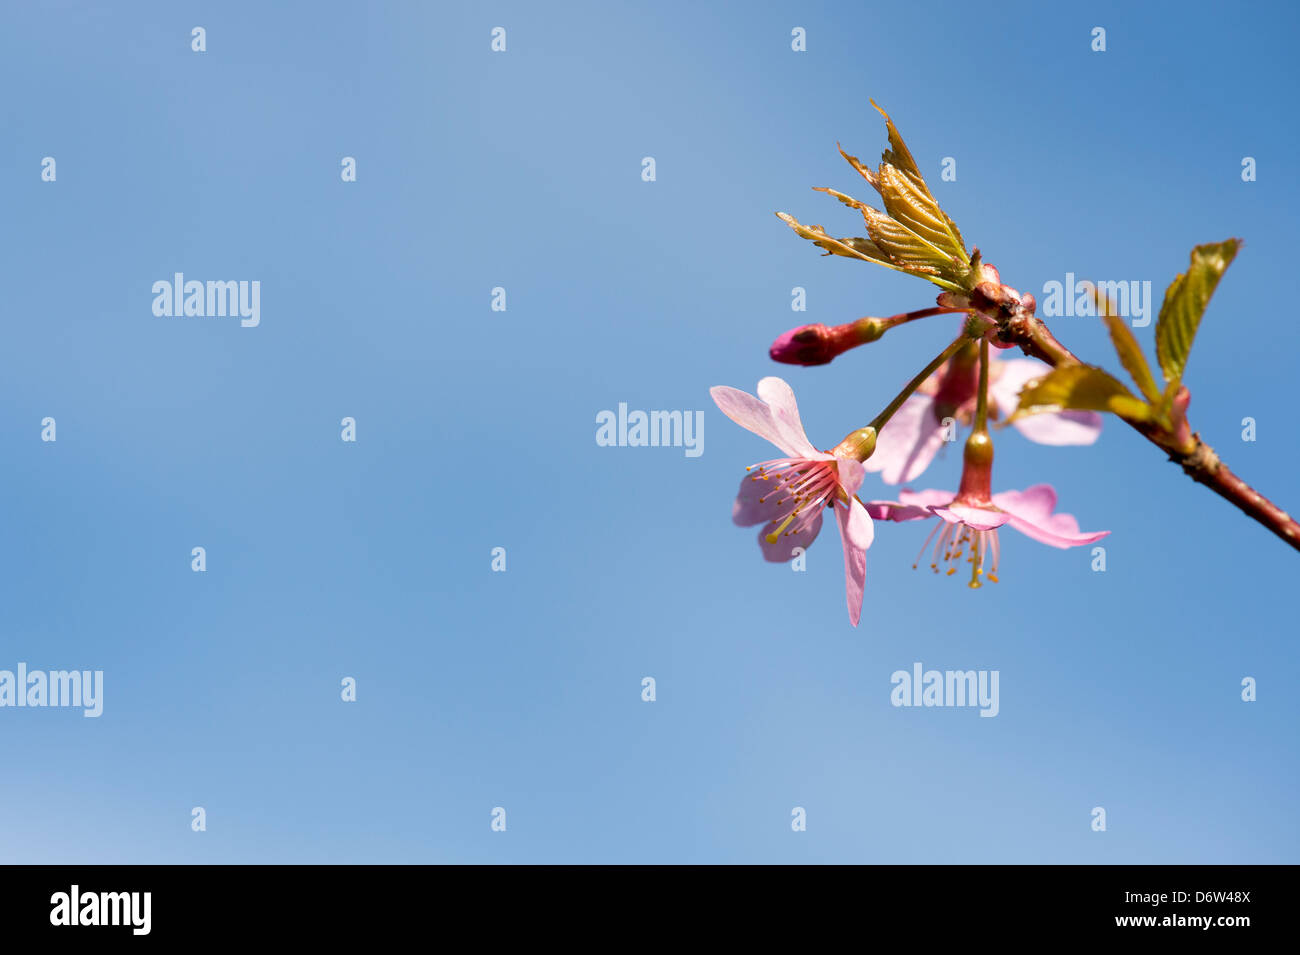 Prunus Avium Sweetheart.  Cherry tree blossom Stock Photo